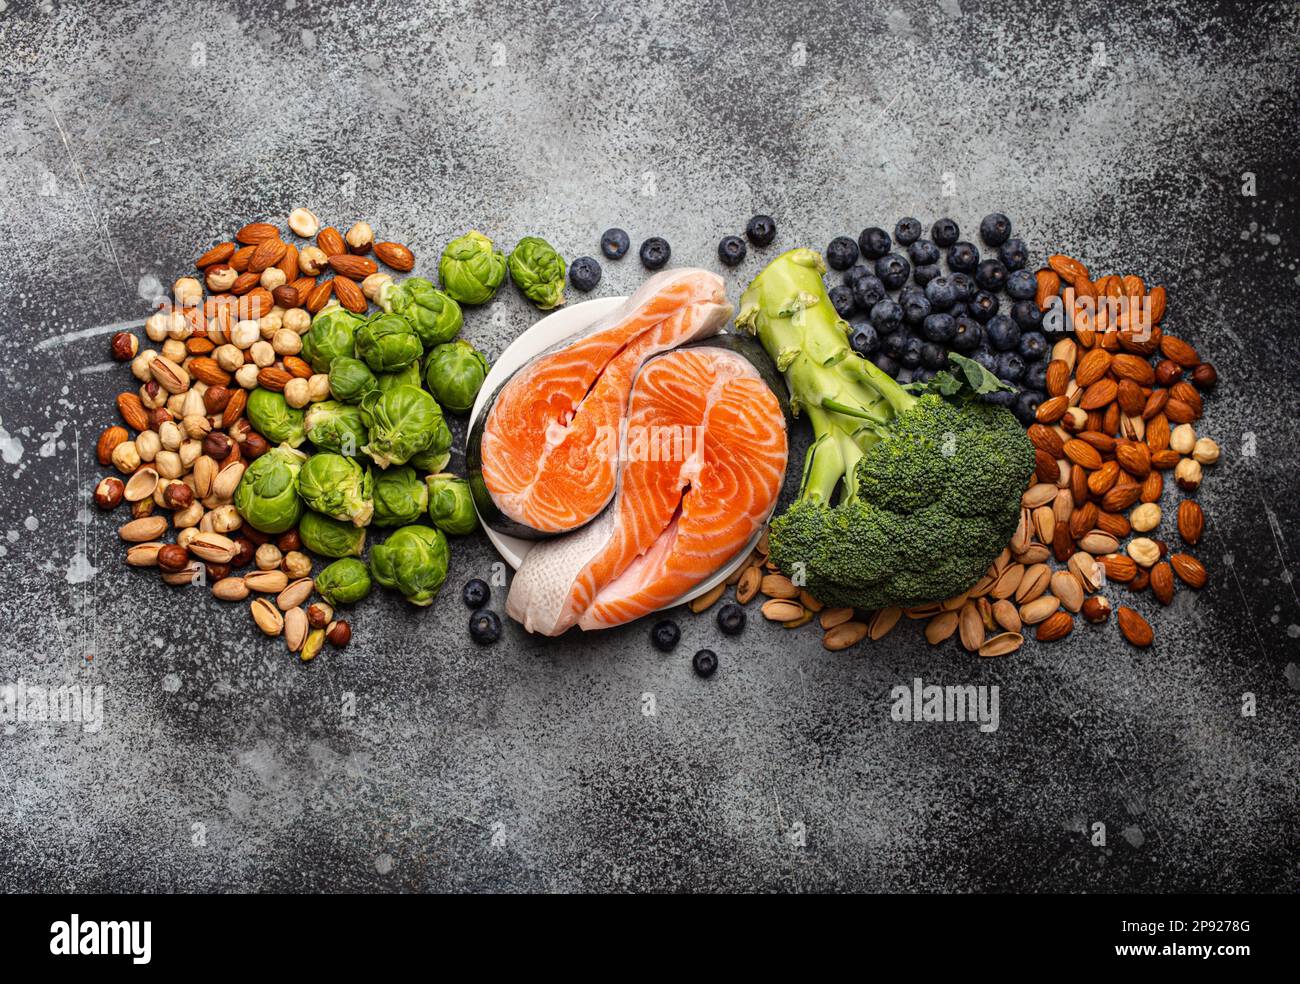 Verschiedene Lebensmittel für die Gesundheit des Gehirns und gutes Gedächtnis: Frischer Lachs, Gemüse, Nüsse, Beeren auf Stein Hintergrund. Gesunde frische Produkte, um das Gehirn anzukurbeln Stockfoto